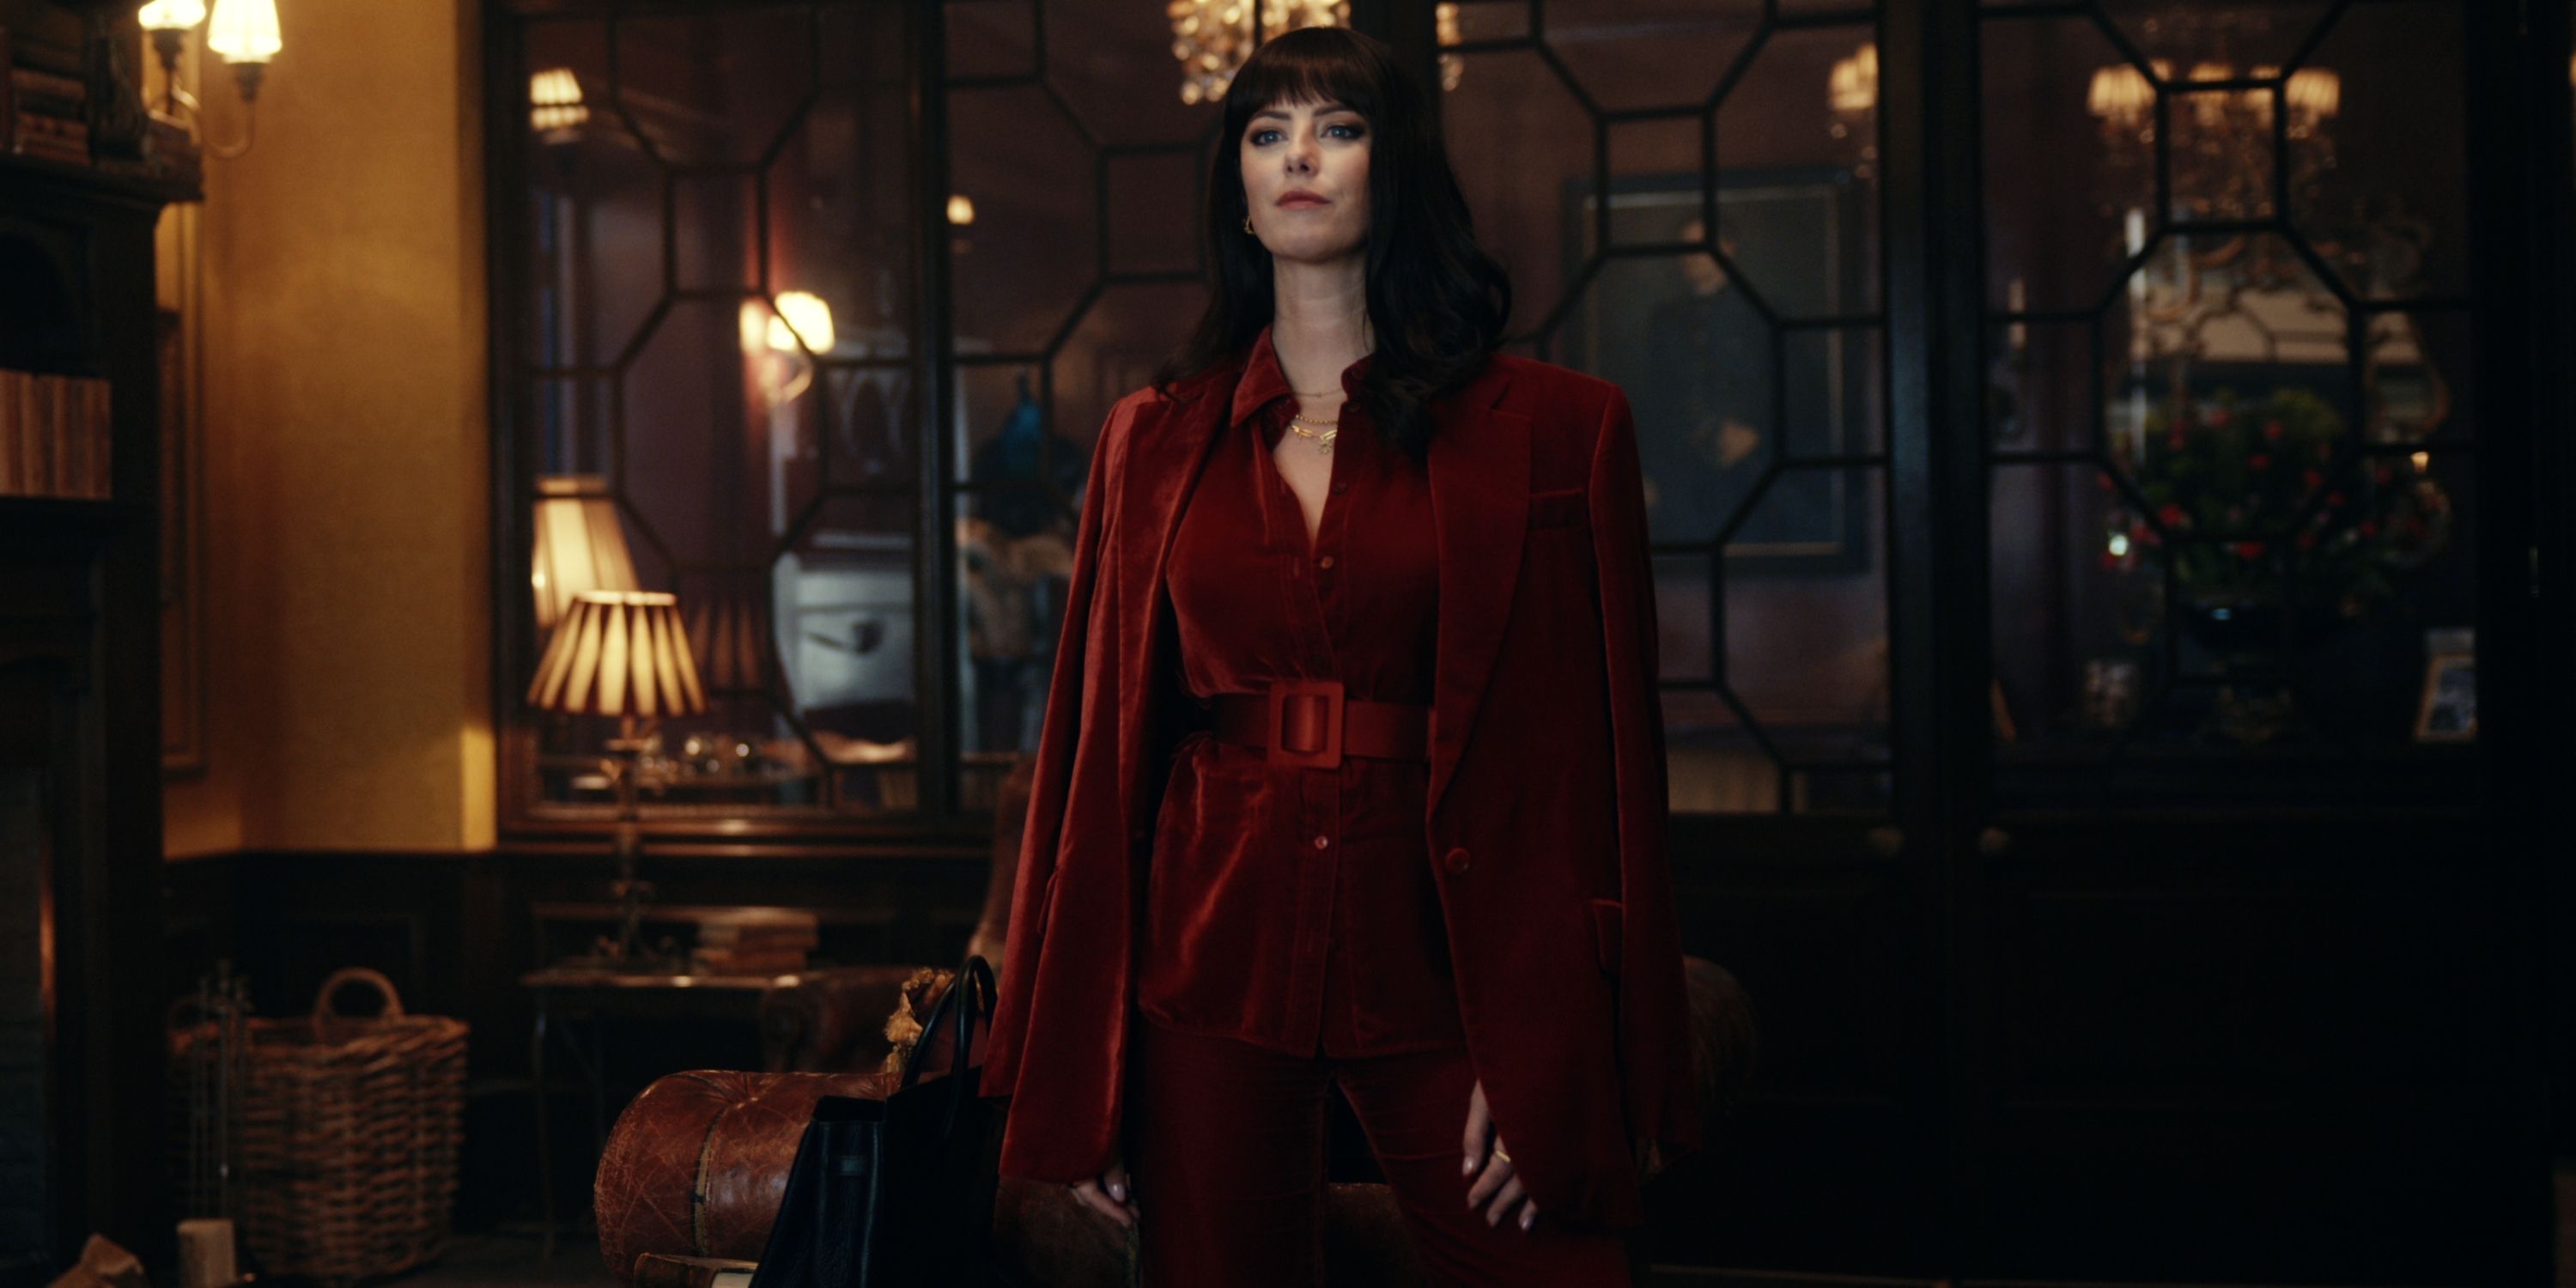 Kaya Scodelario as Susie Glass in a red velvet suit in Episode 3 of The Gentlemen